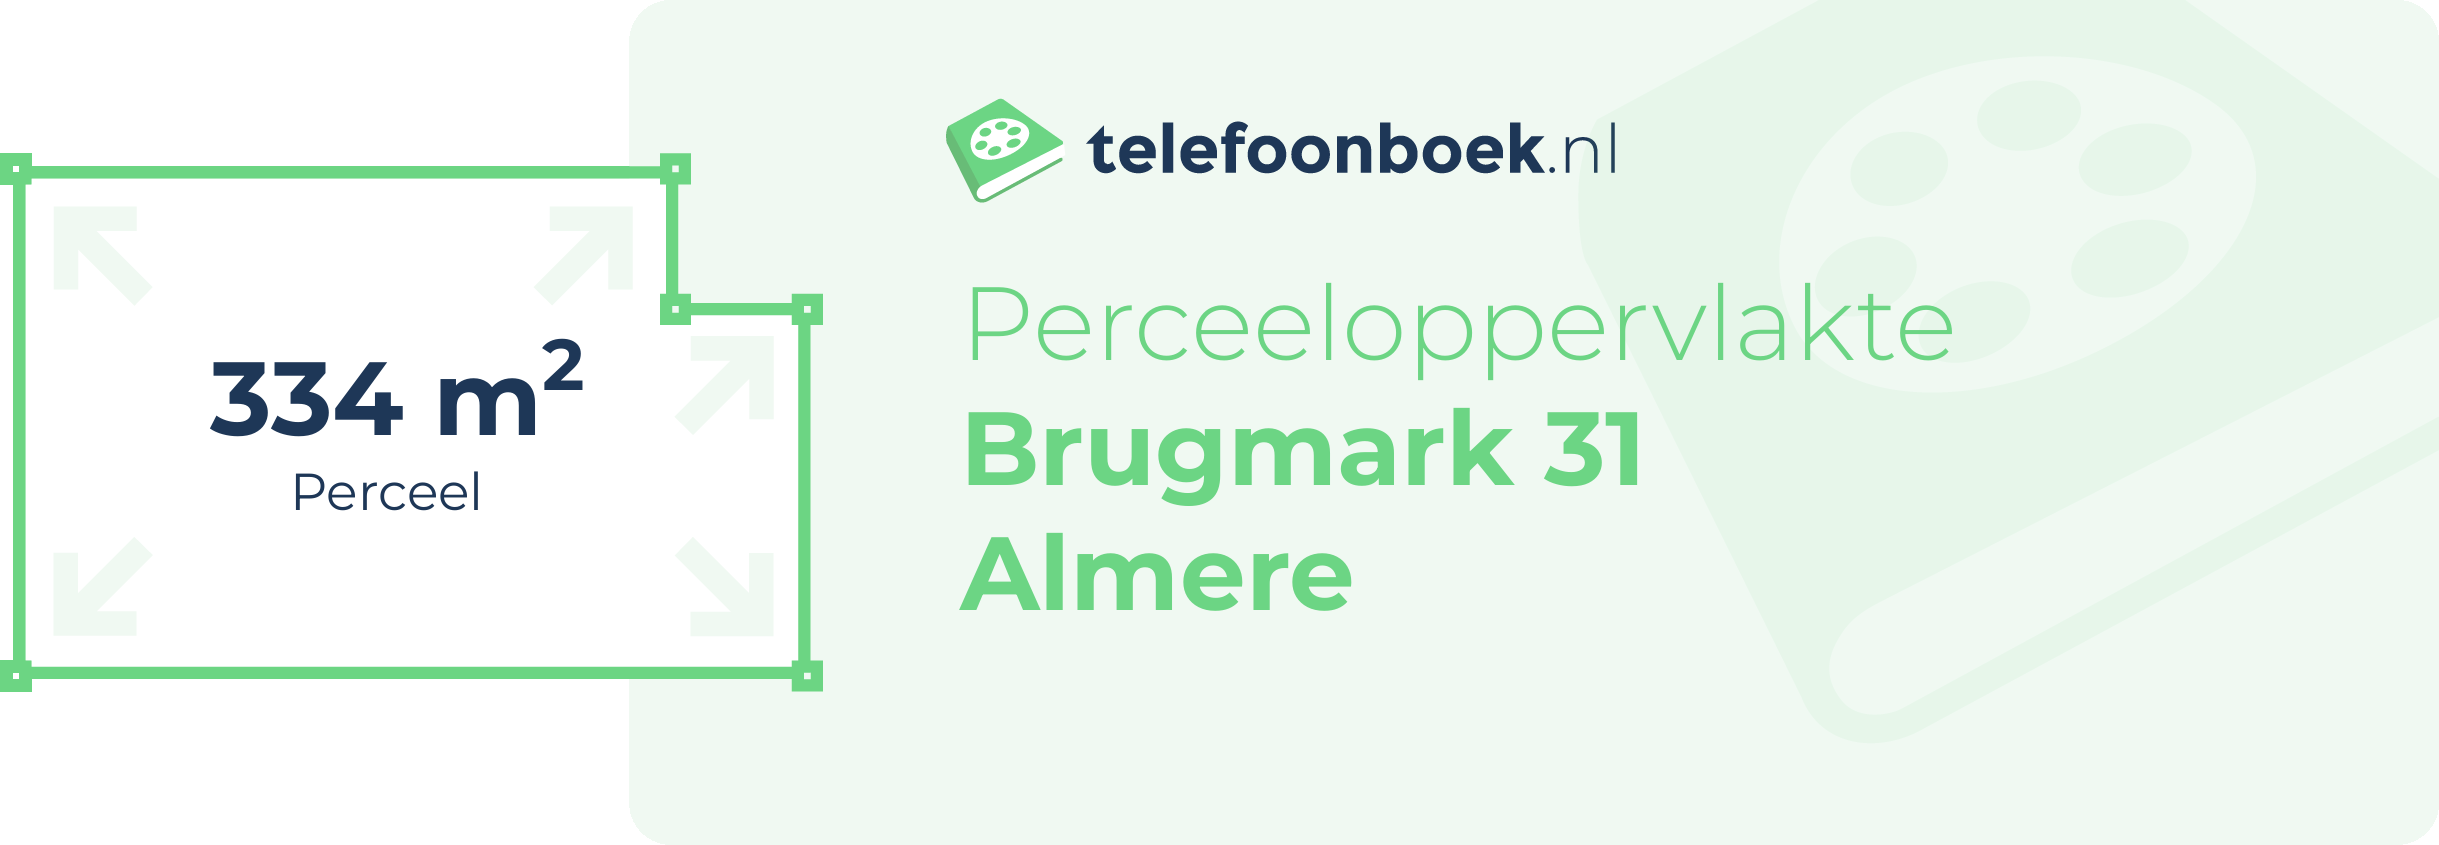 Perceeloppervlakte Brugmark 31 Almere